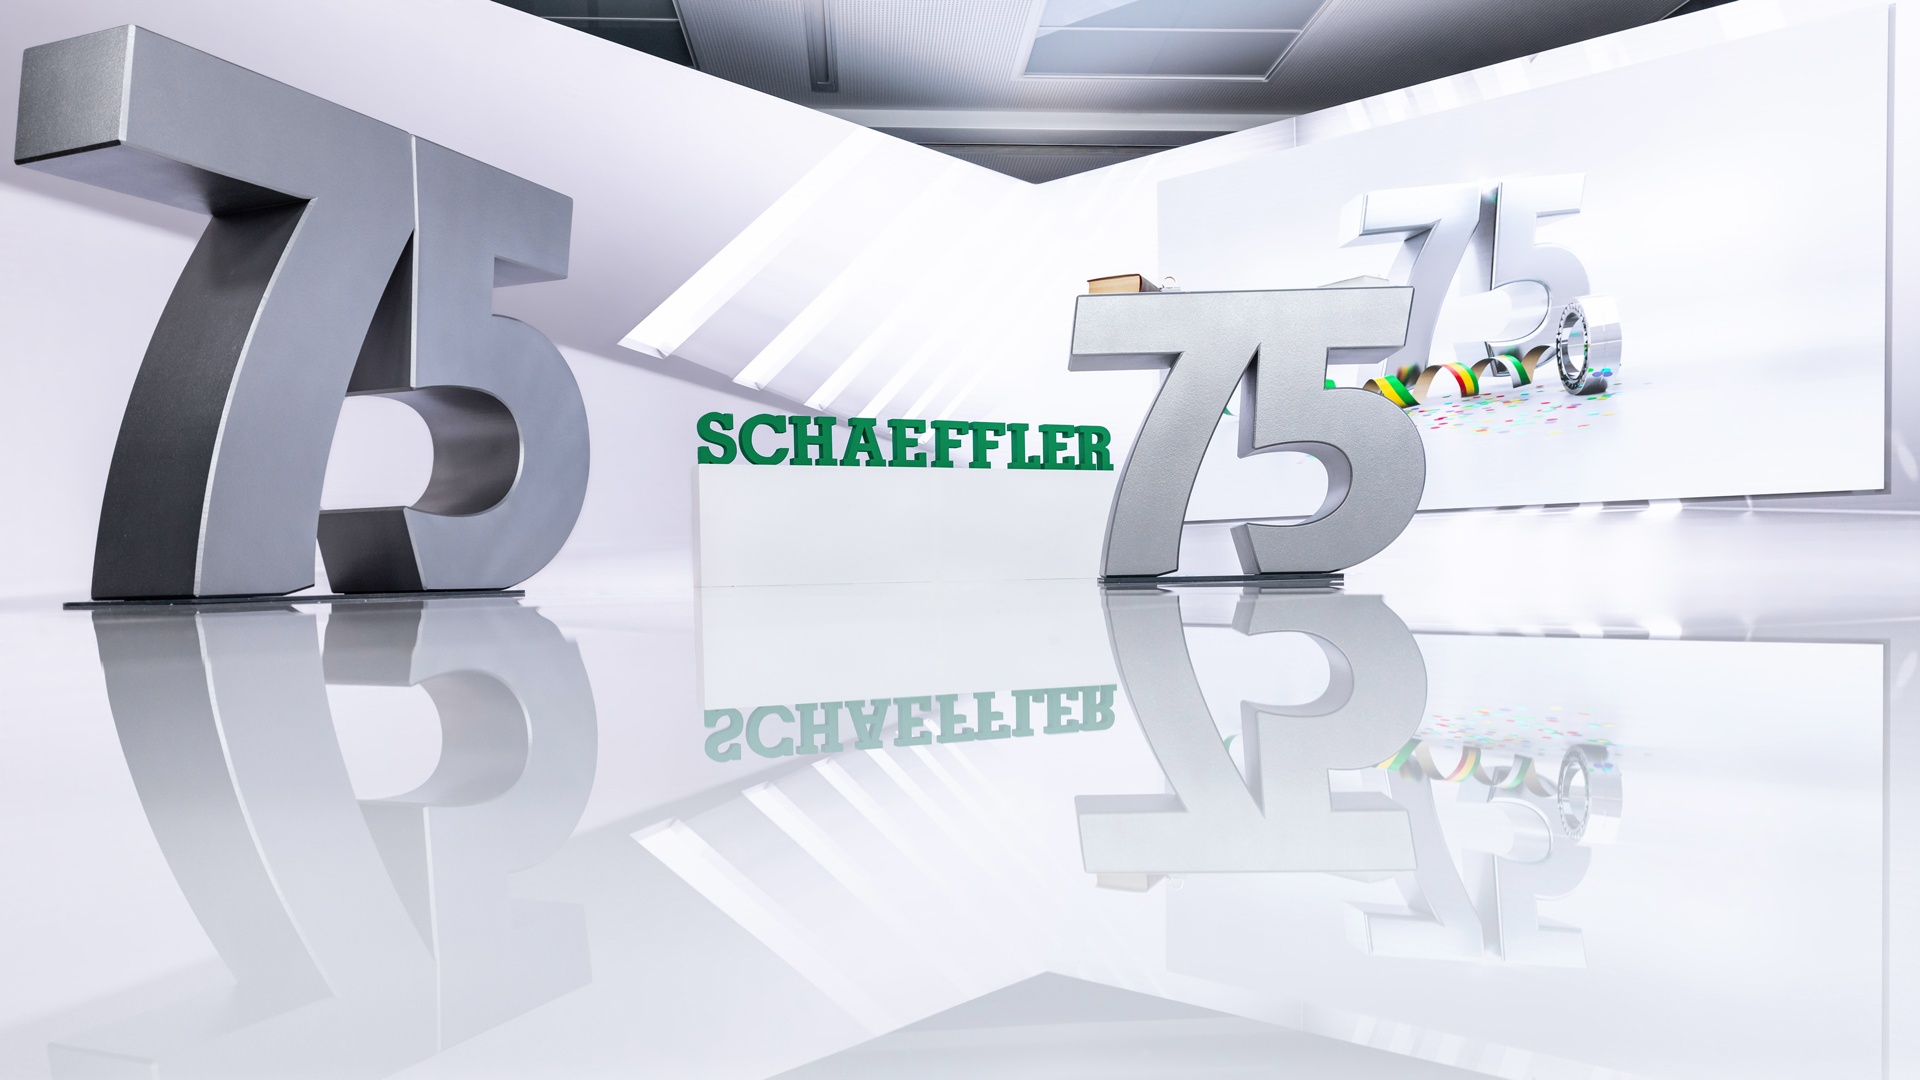 Schaeffler 75 Years